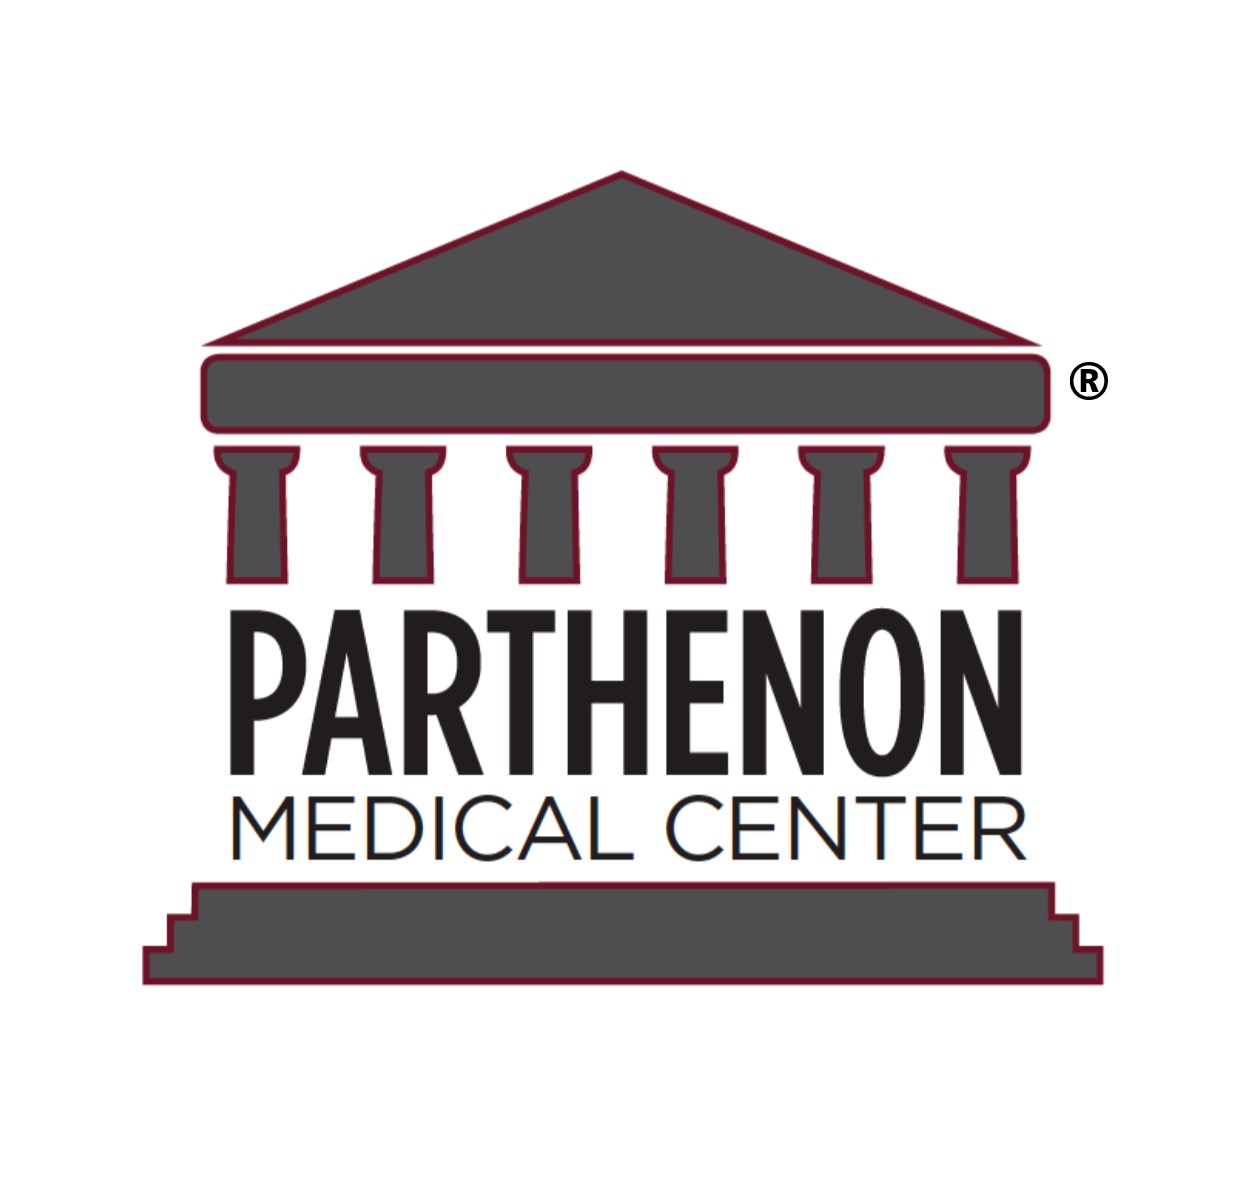 Parthenon Medical Center